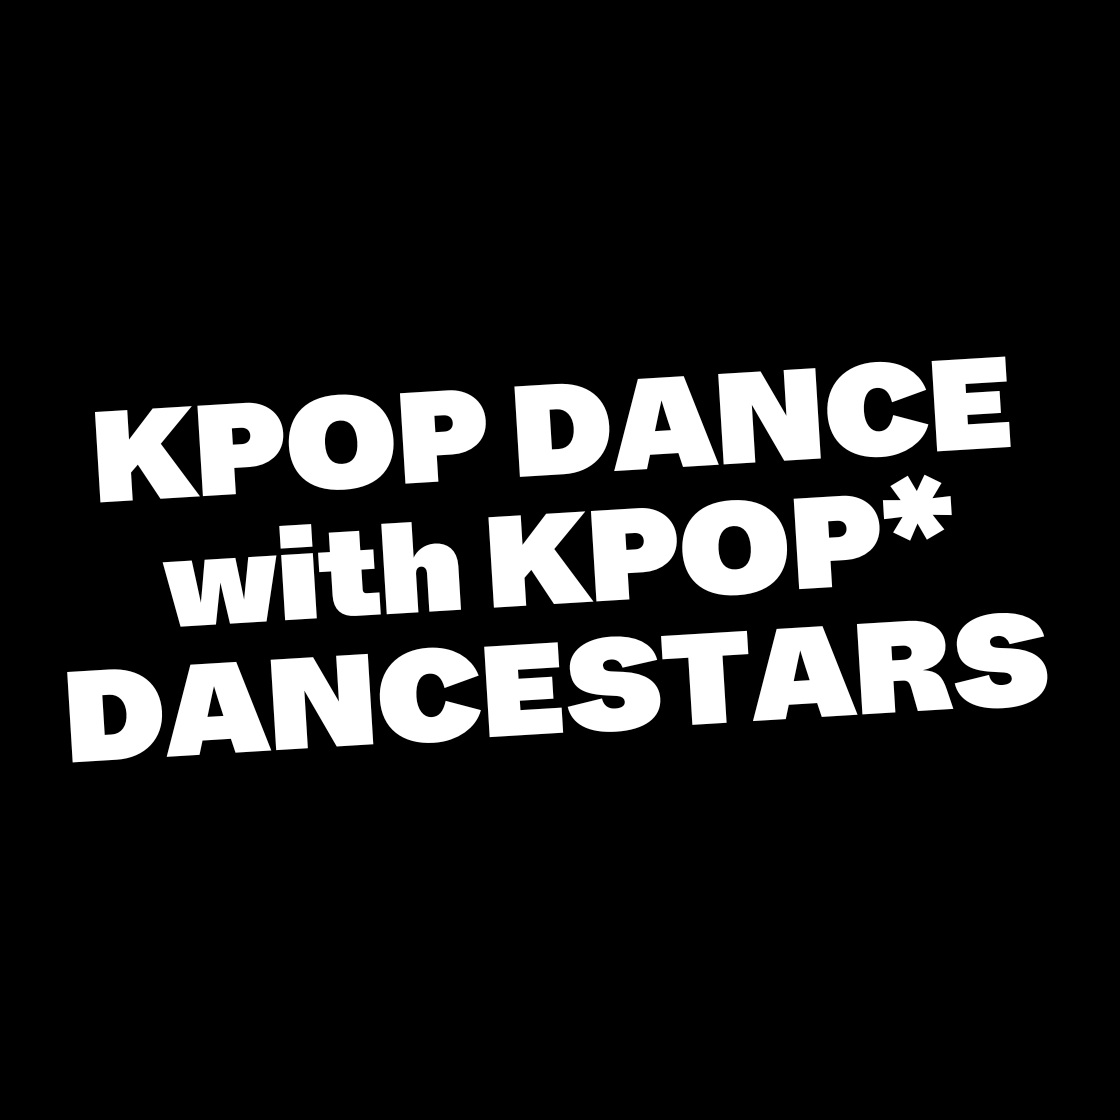 KPOP DANCE with KPOP*DANCESTARS